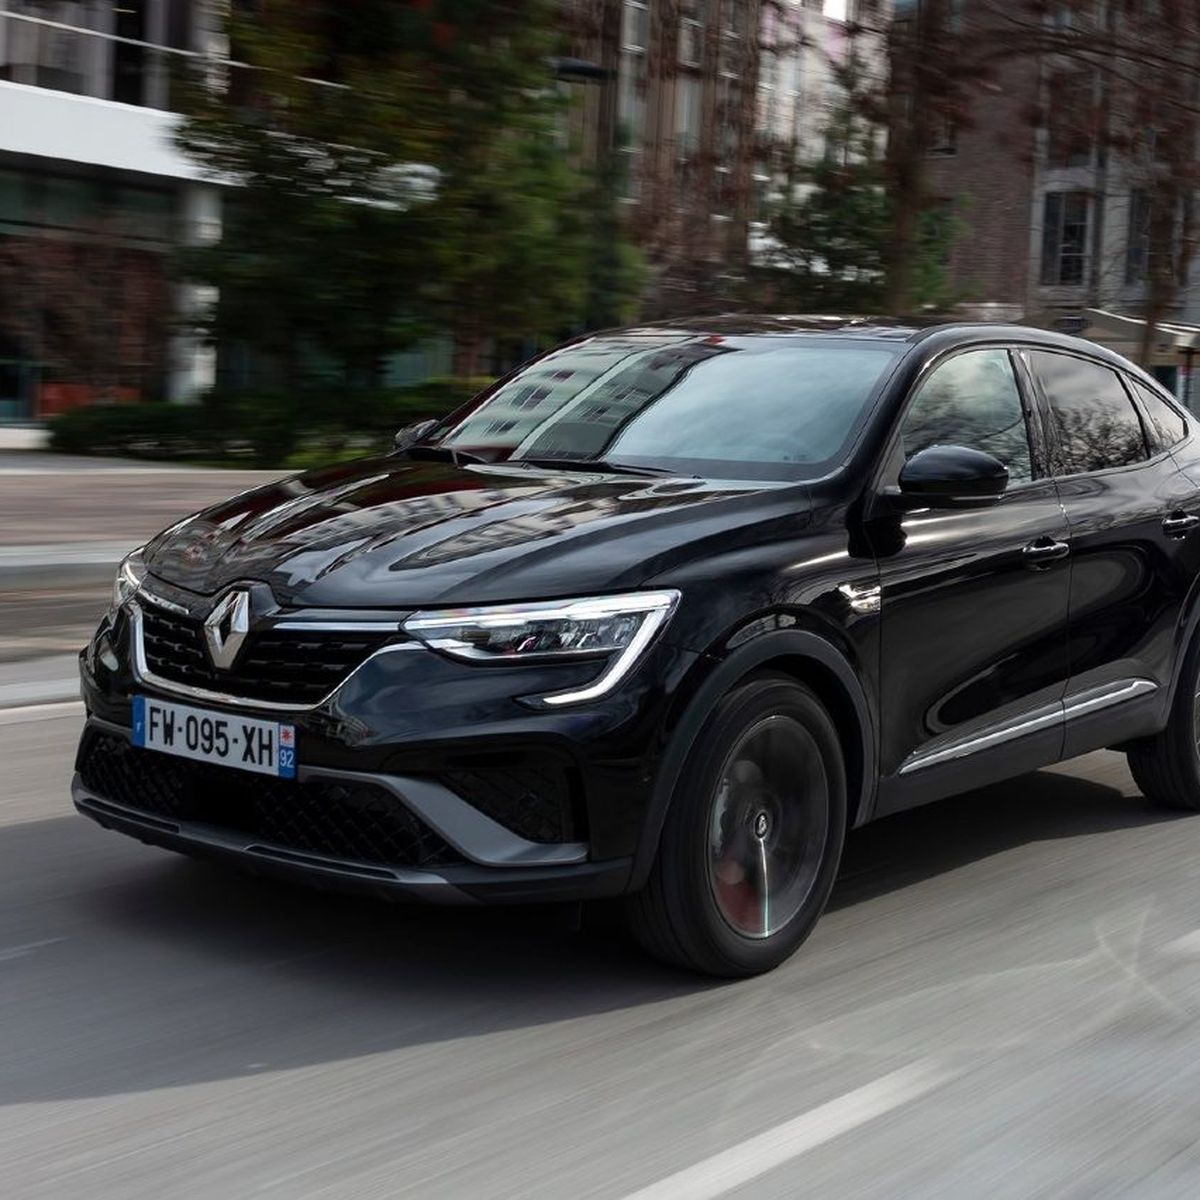 Renault Arkana medidas y maletero: todo sobre el SUV coupé